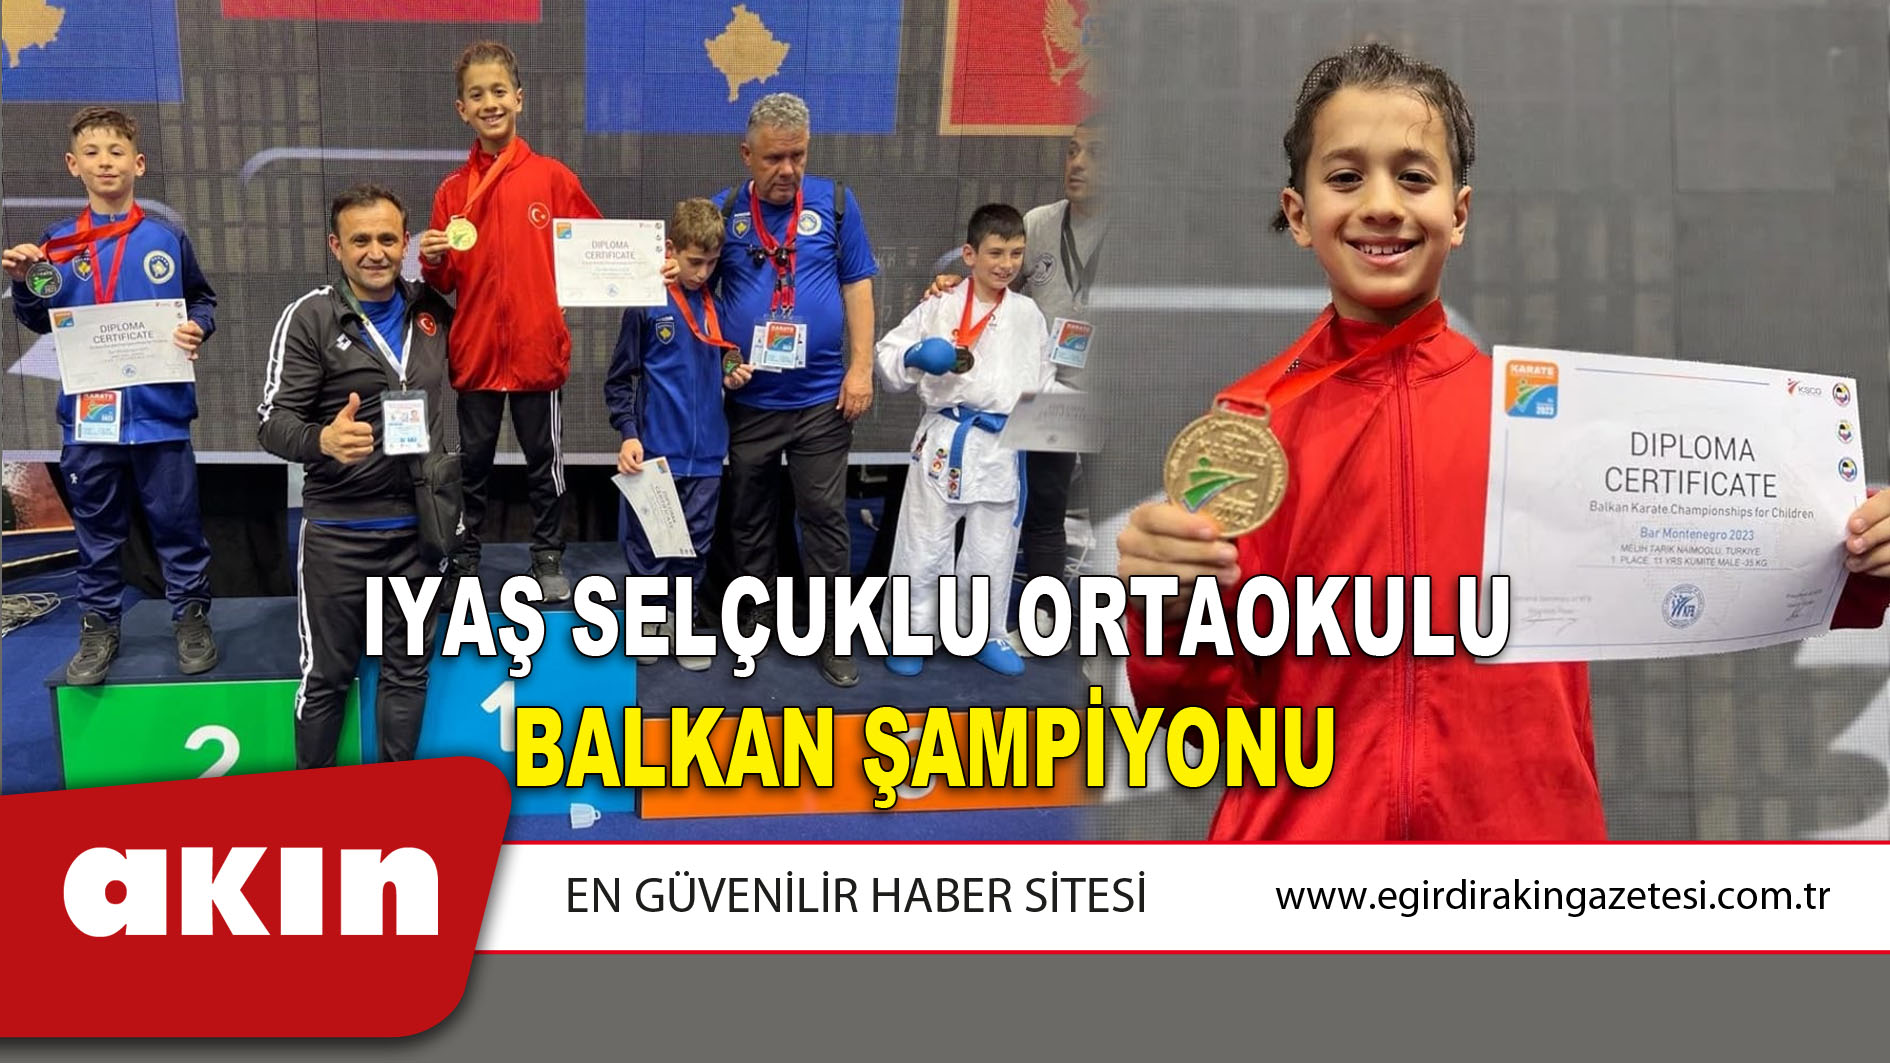 Iyaş Selçuklu Ortaokulu Balkan Şampiyonu 